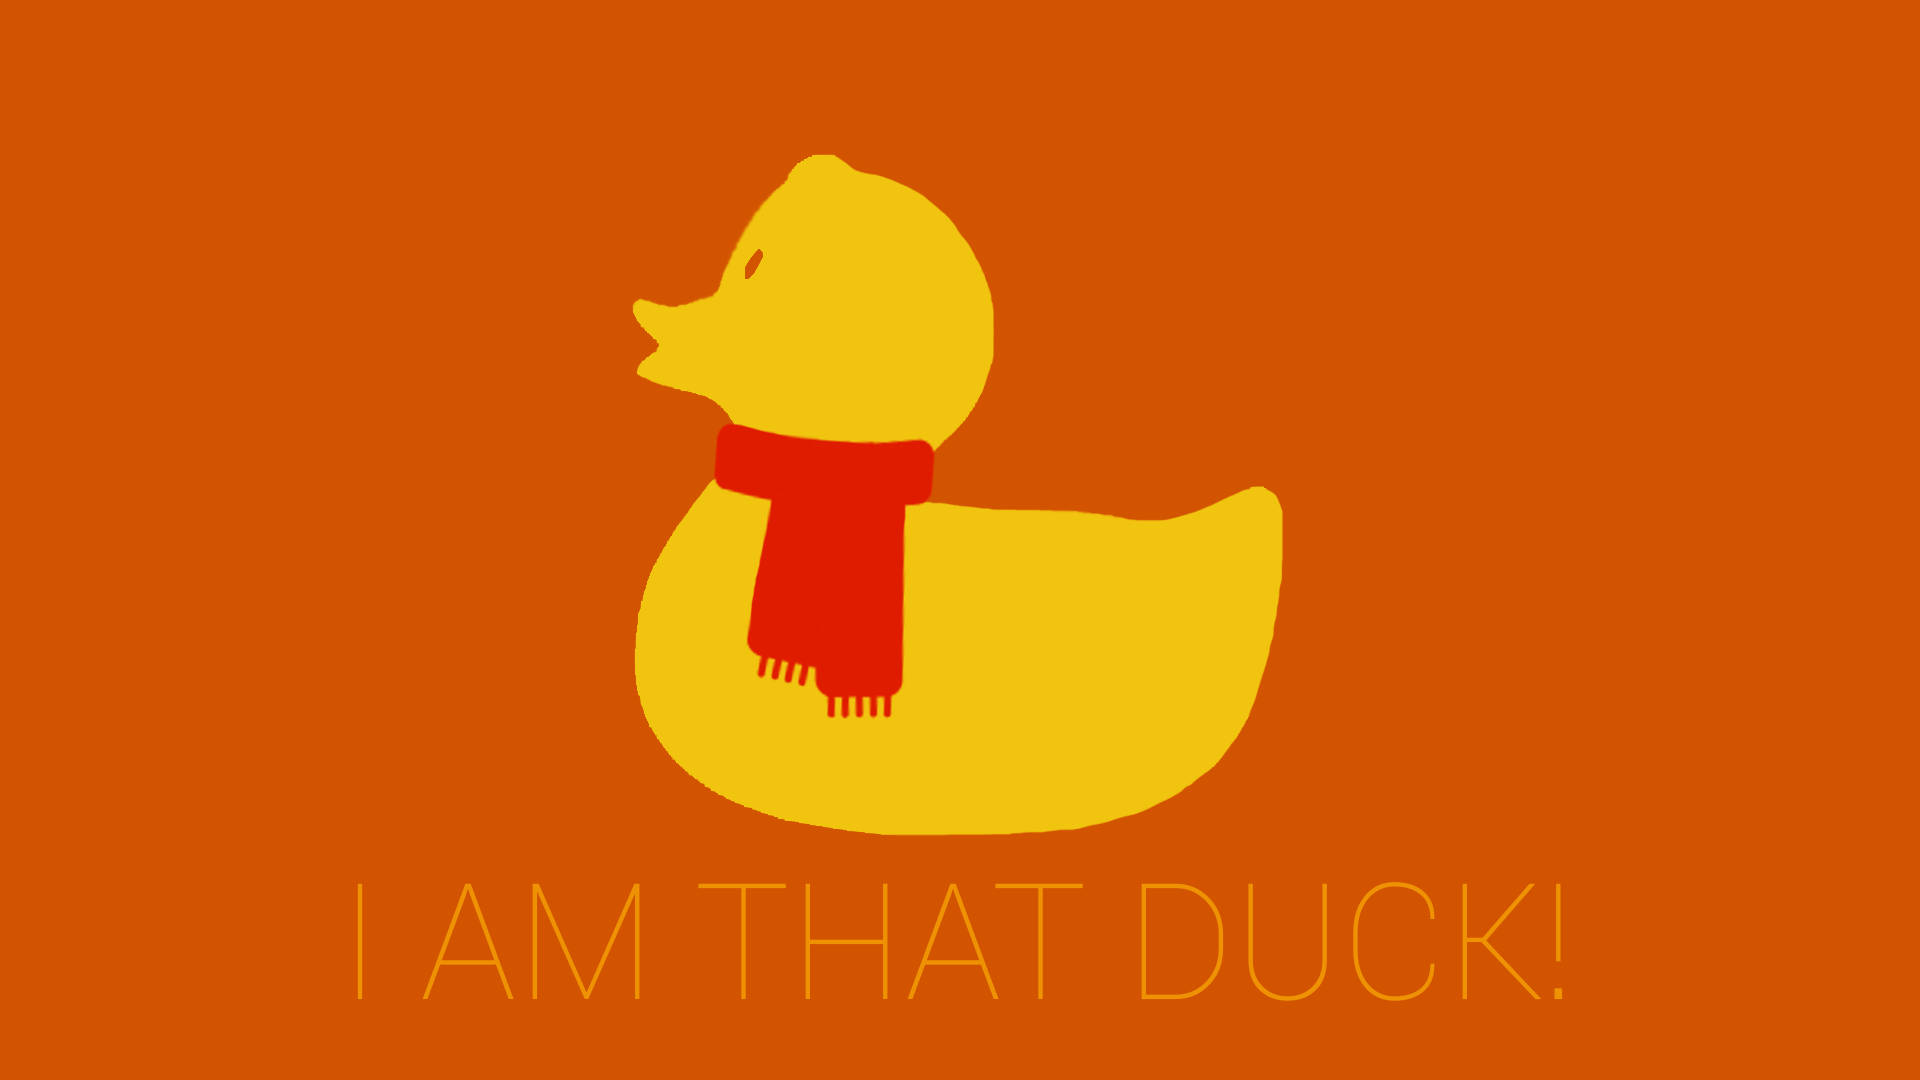 I Am That Duck Wallpaper